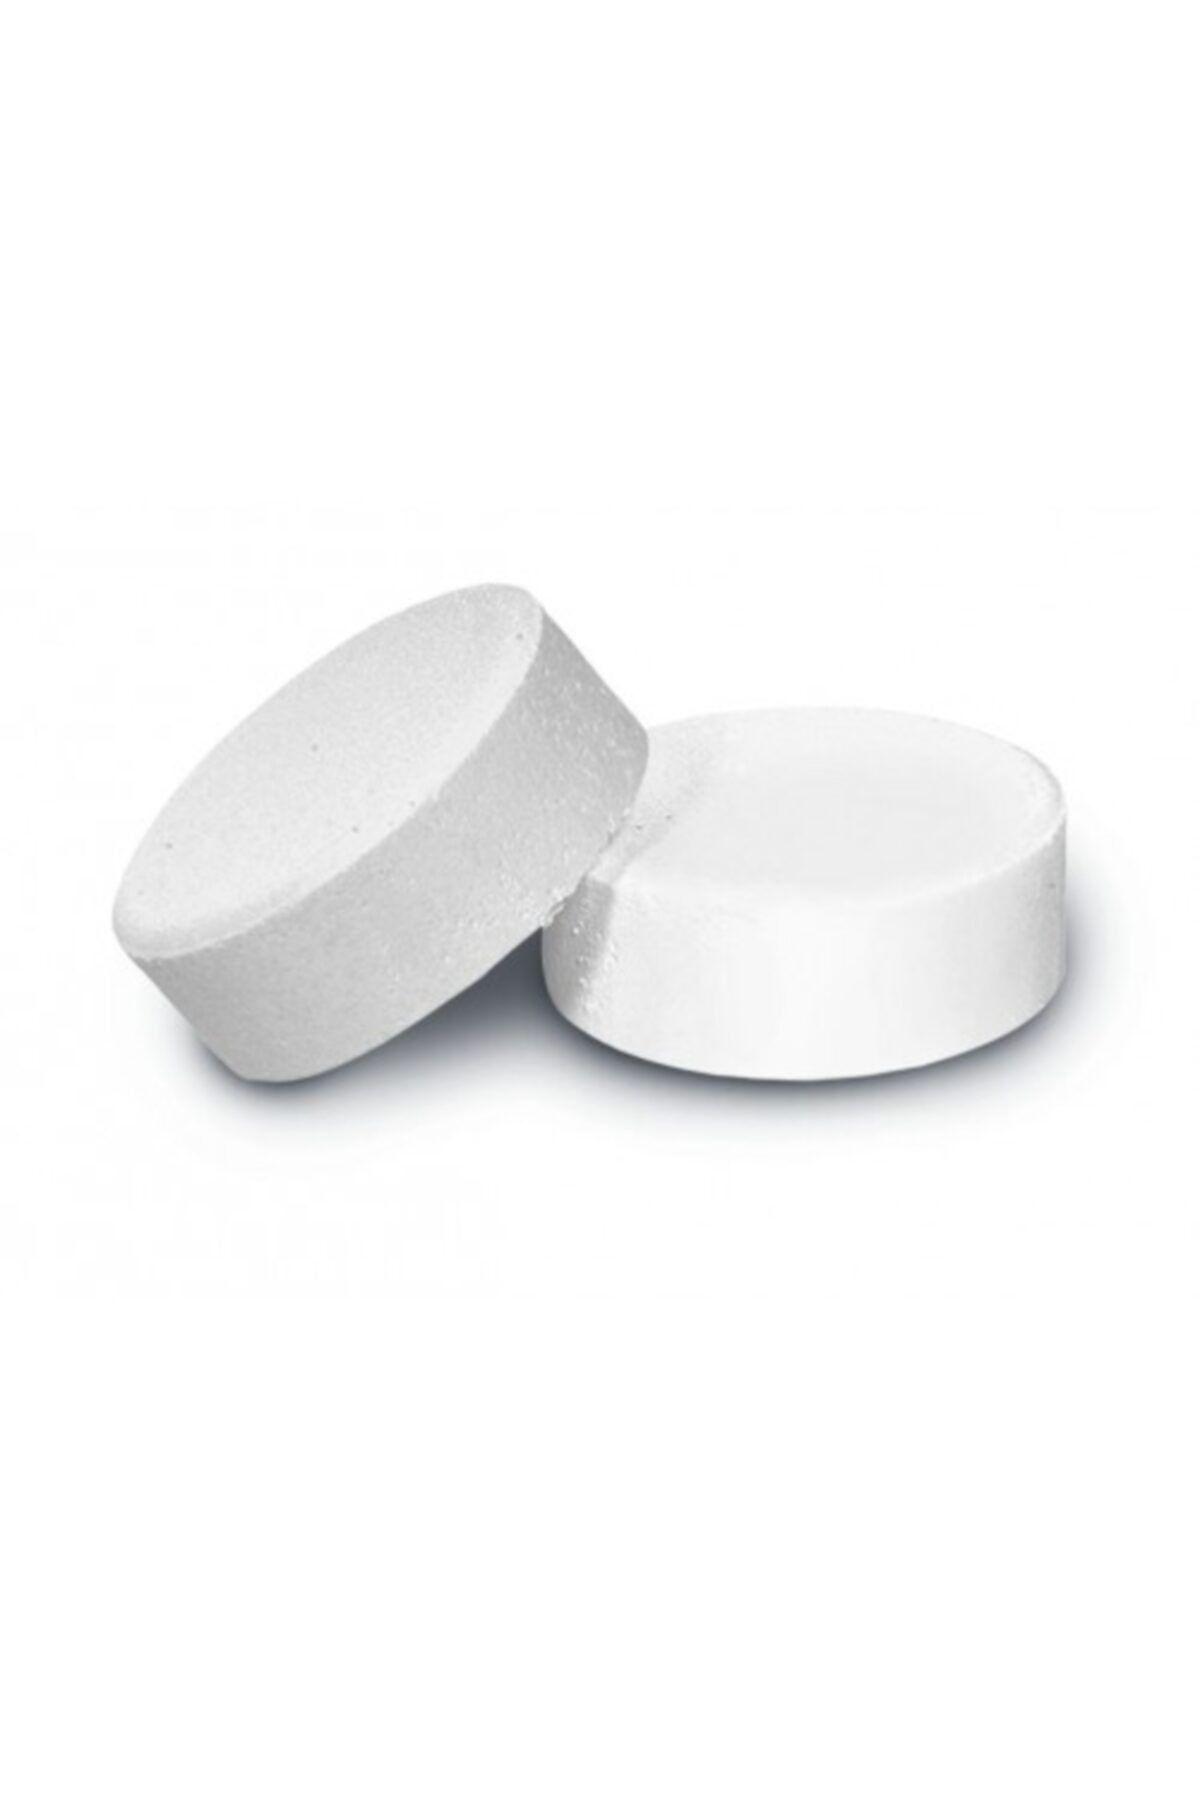 Asenya Tablet Klor 4 Adet 200 Gr Yosun Önleyici Yosunlaşma Önleme Su Dezenfektanı Su Dezenfeksiyonu